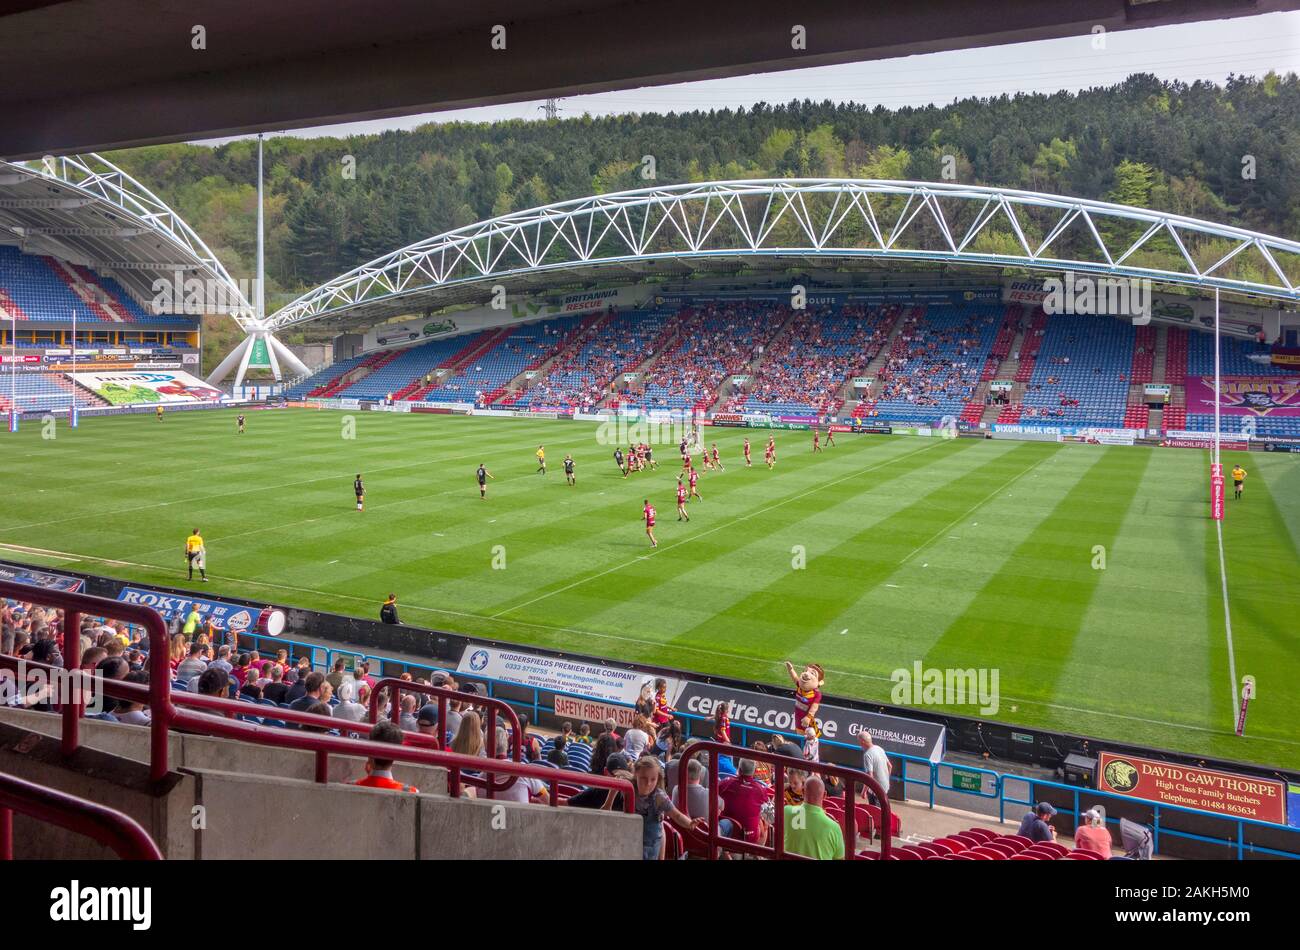 Vista desde las gradas de un partido entre la Liga de Rugby Huddersfield Giants y Broncos de Londres, John Smith's Stadium, Huddersfield, West Yorkshire, Reino Unido Foto de stock